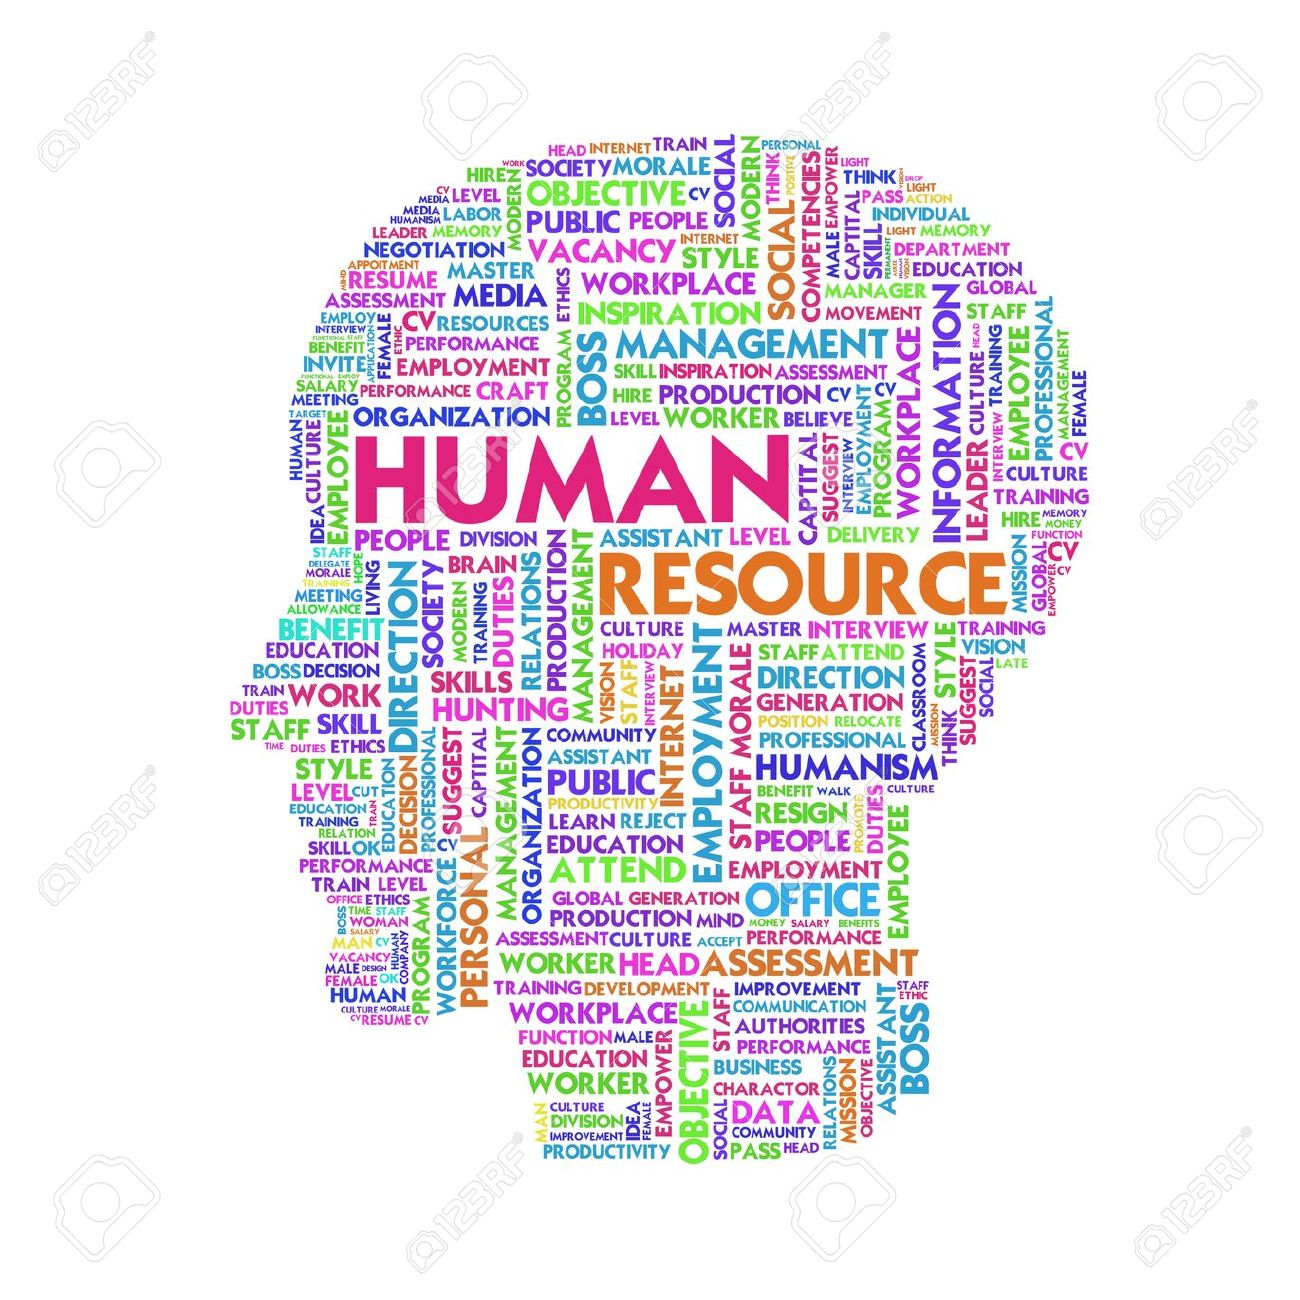 human resources clipart - Human Resources Clipart